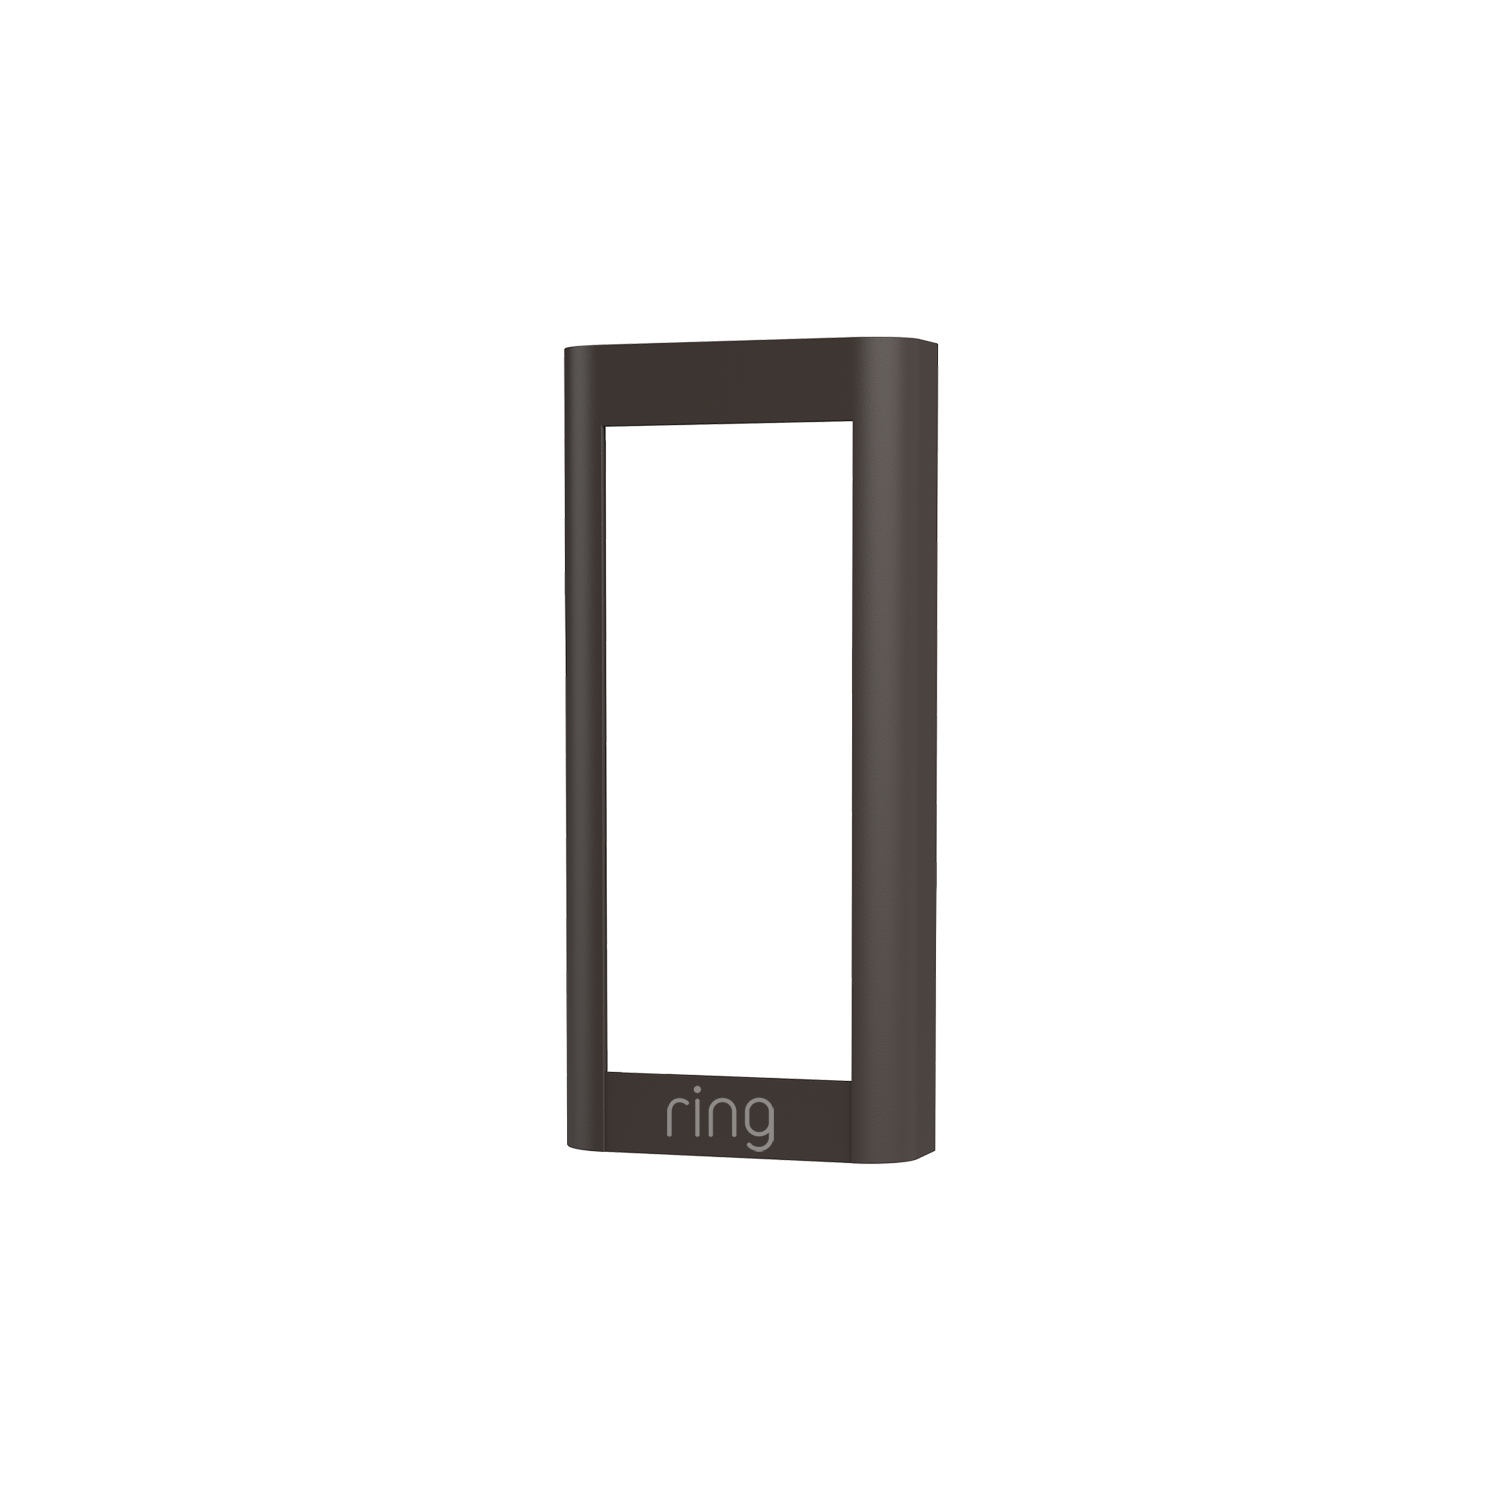 Interchangeable Faceplate (for Video Doorbell Wired) - Mocha Brown:Interchangeable Faceplate (for Video Doorbell Wired)